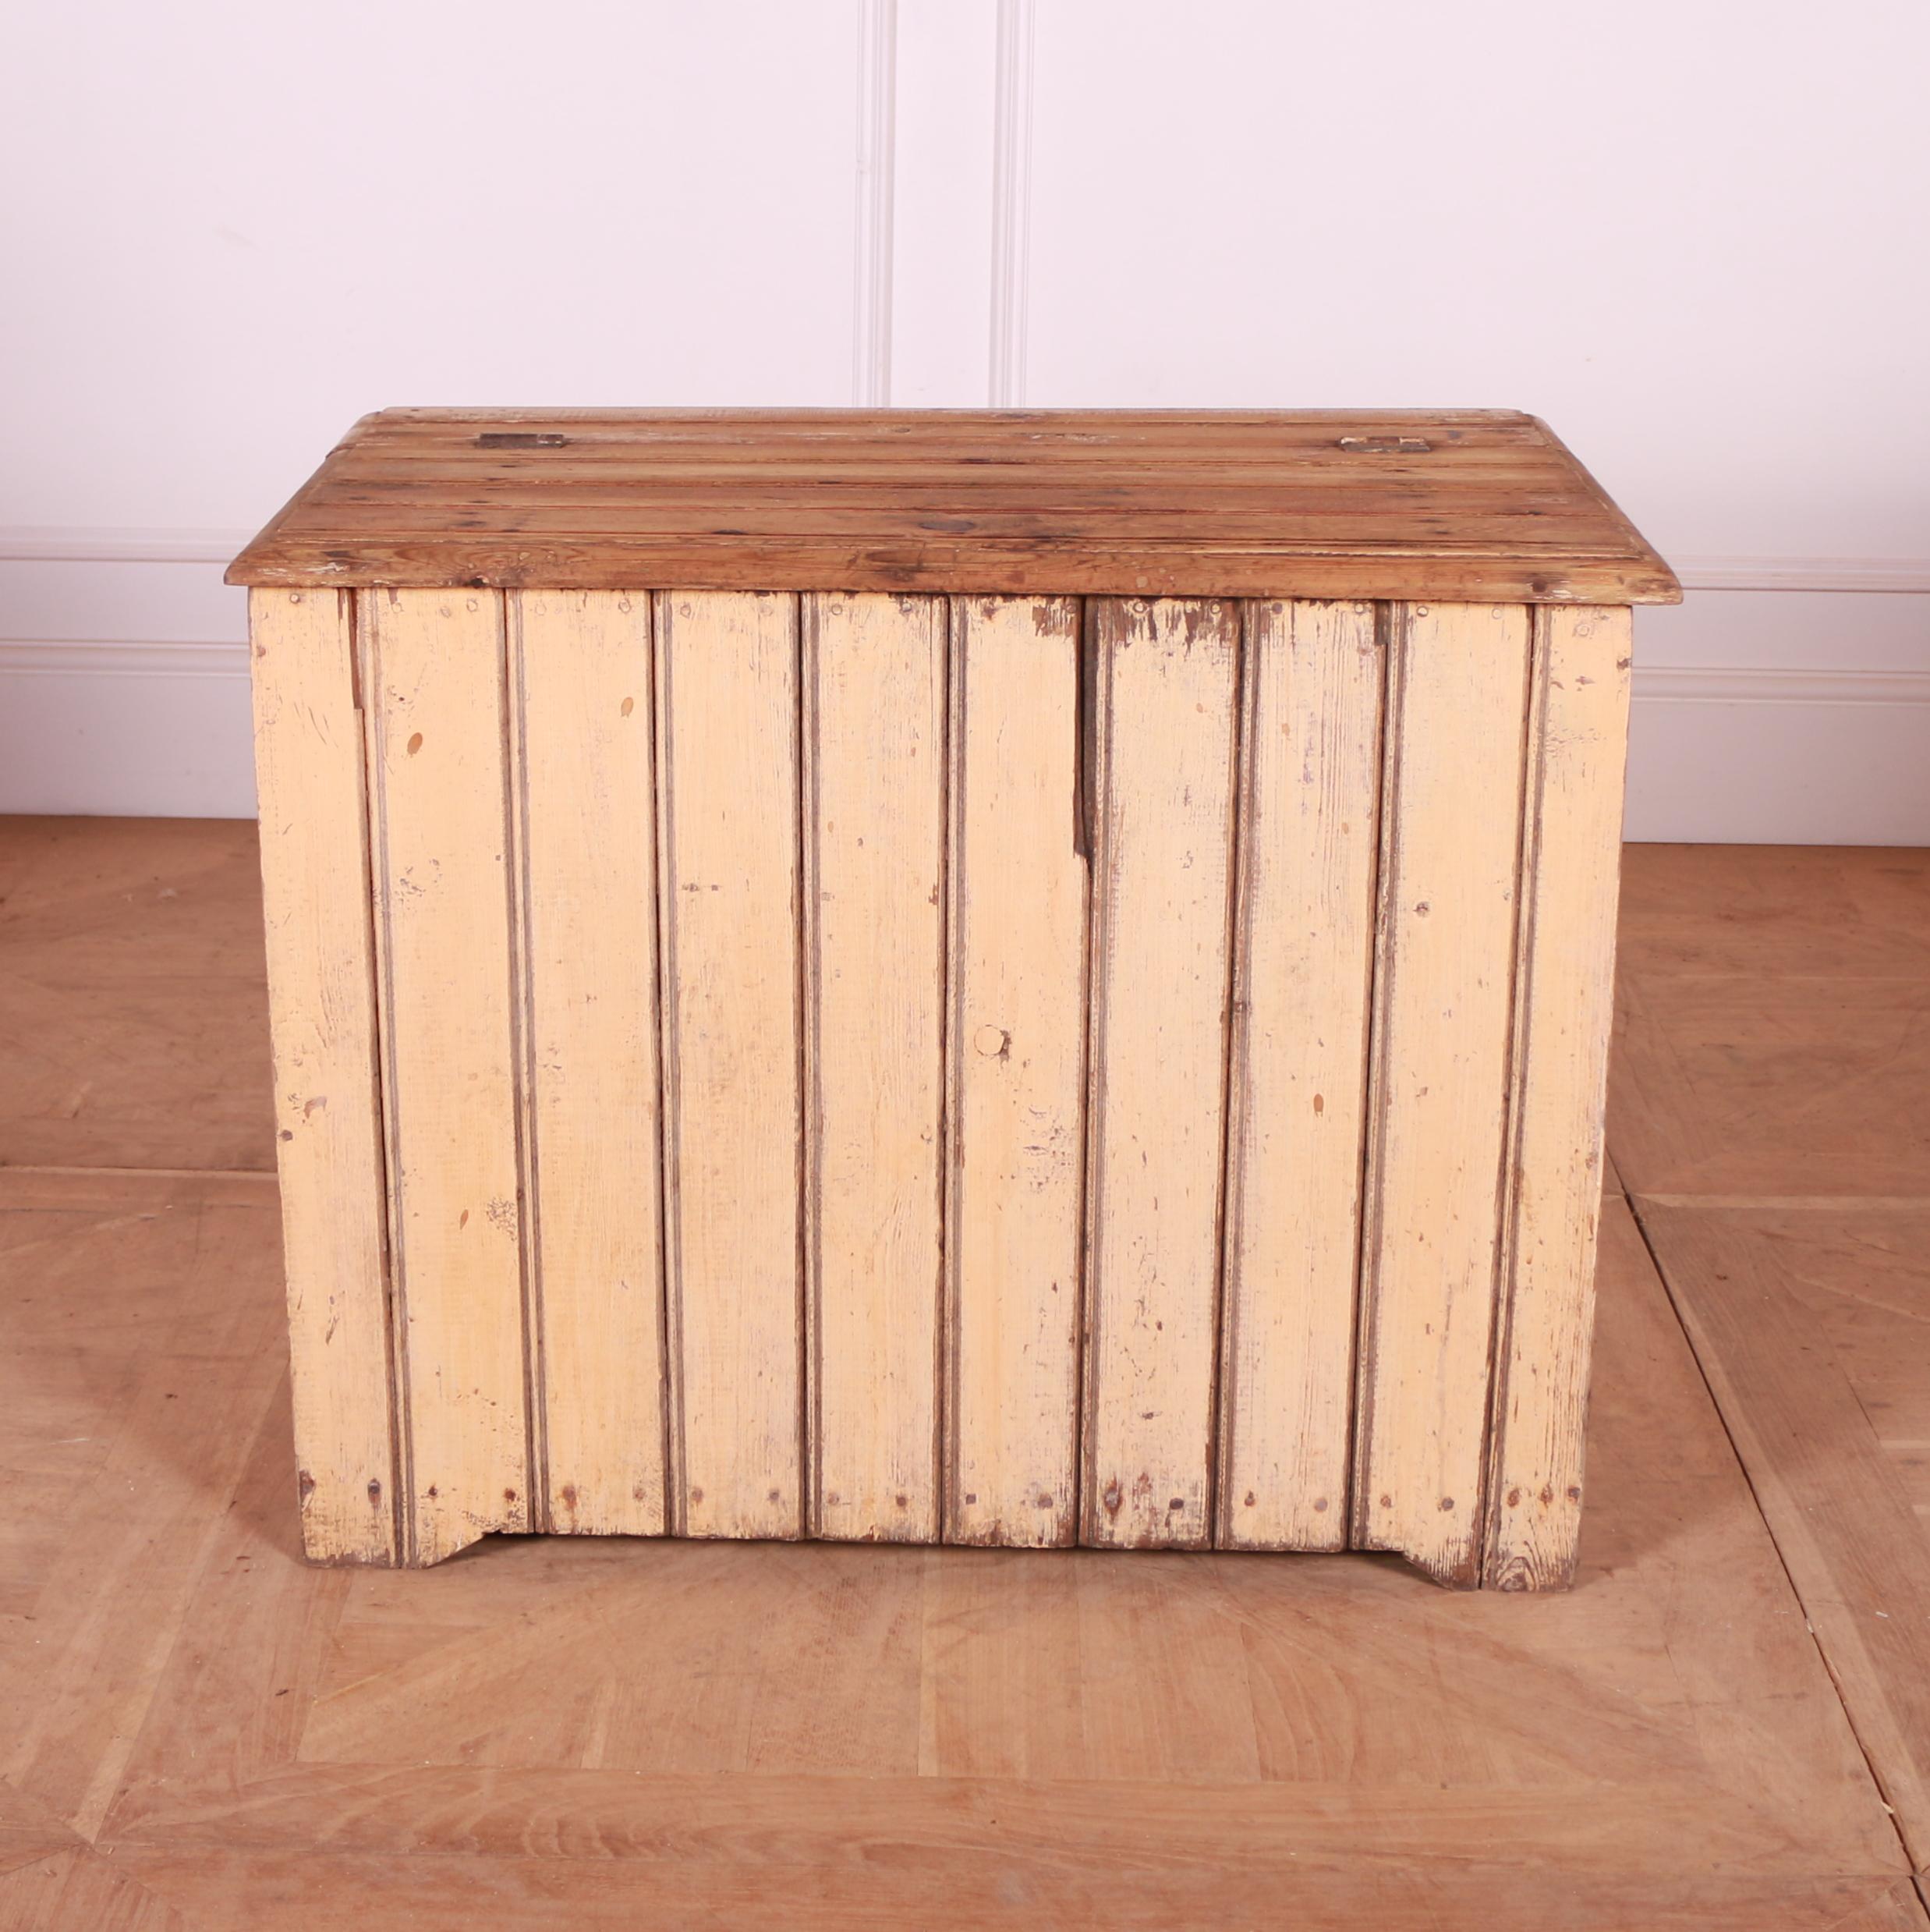 Kleiner original bemalter schwedischer Holzbehälter aus Kiefer. 1880.

Referenz: 7685

Abmessungen
30,5 Zoll (77 cm) breit
18 Zoll (46 cm) tief
23,5 Zoll (60 cm) hoch.